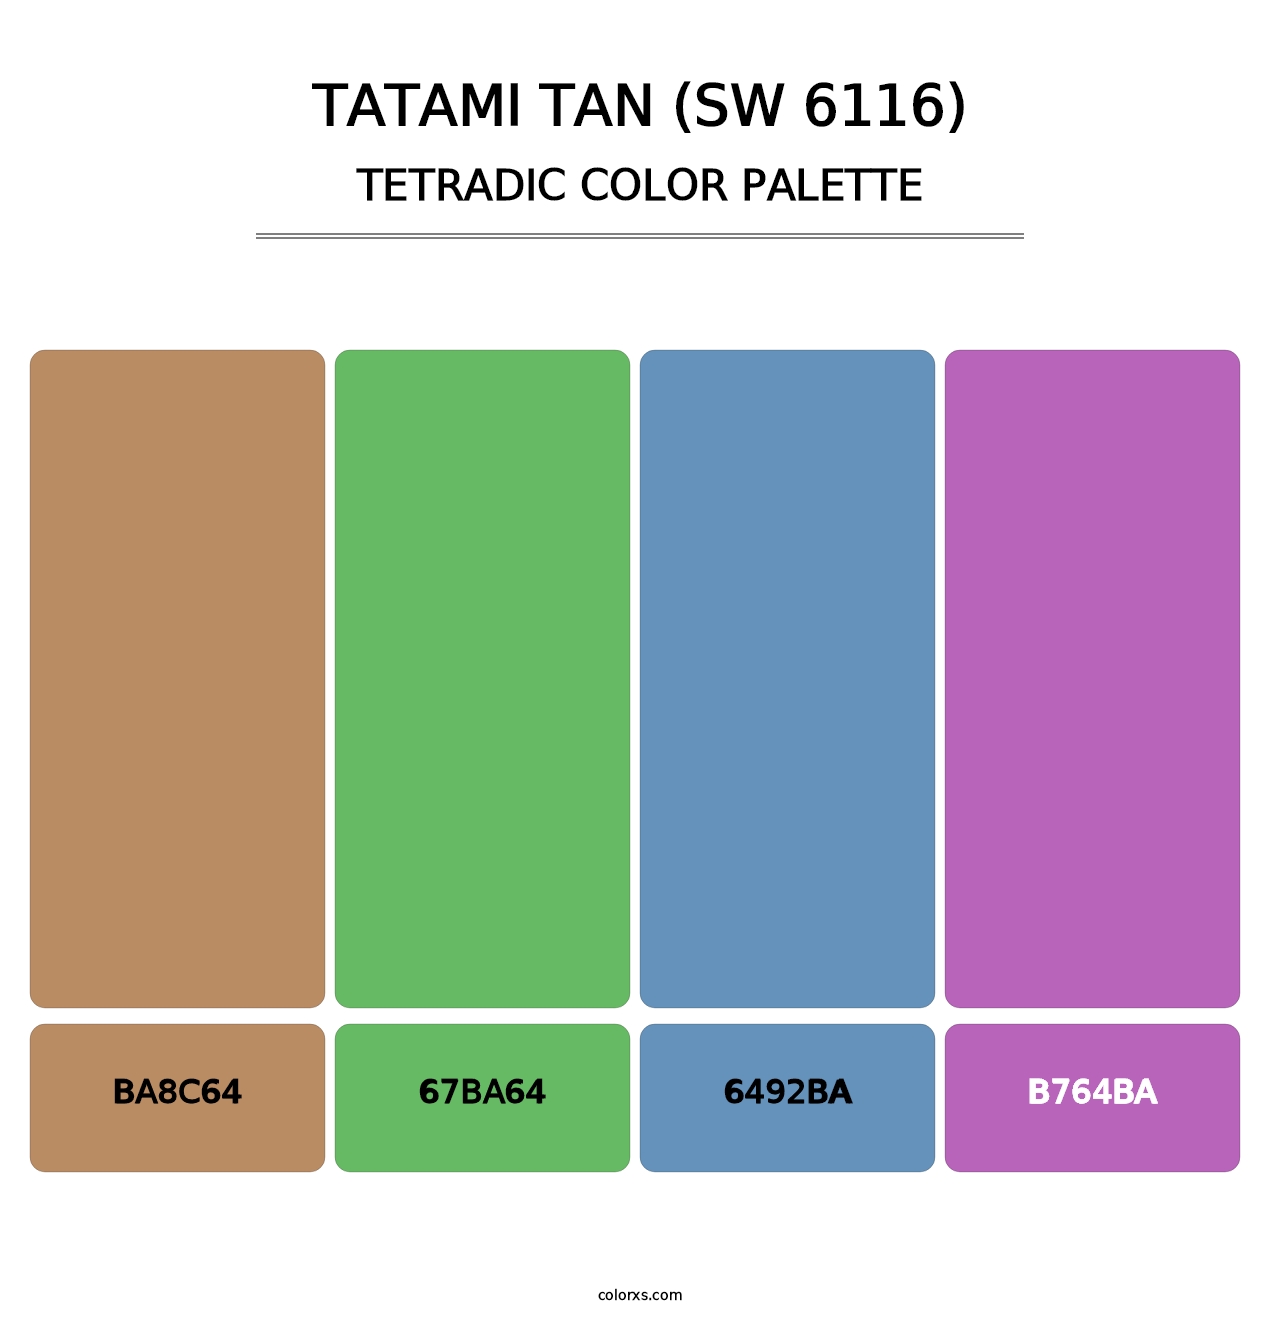 Tatami Tan (SW 6116) - Tetradic Color Palette